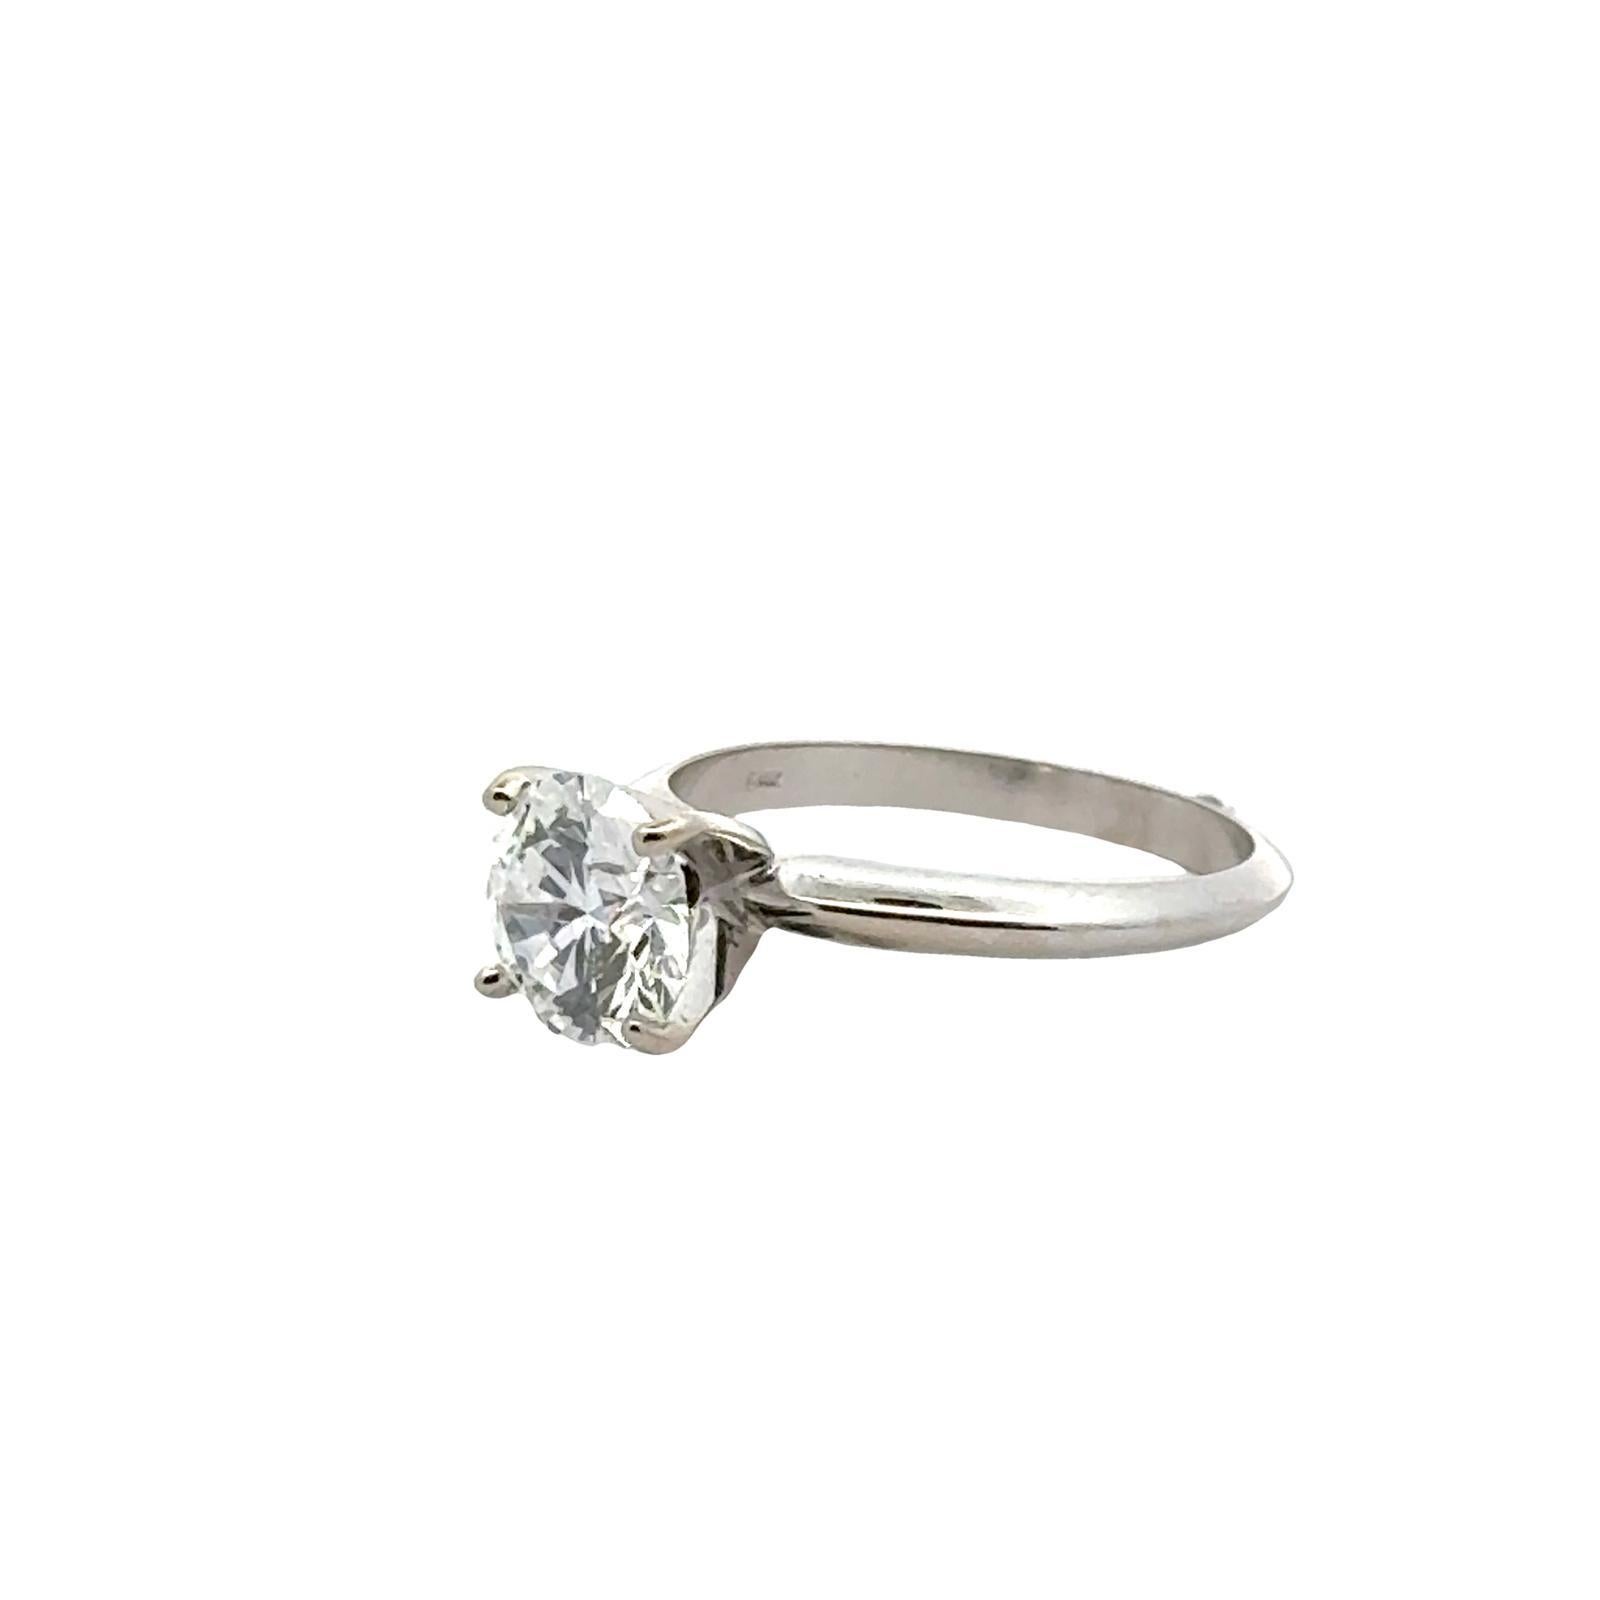 Women's 1.66 Carat Round Brilliant Diamond Solitaire Engagement Ring GIA Cert D/VVS2 For Sale